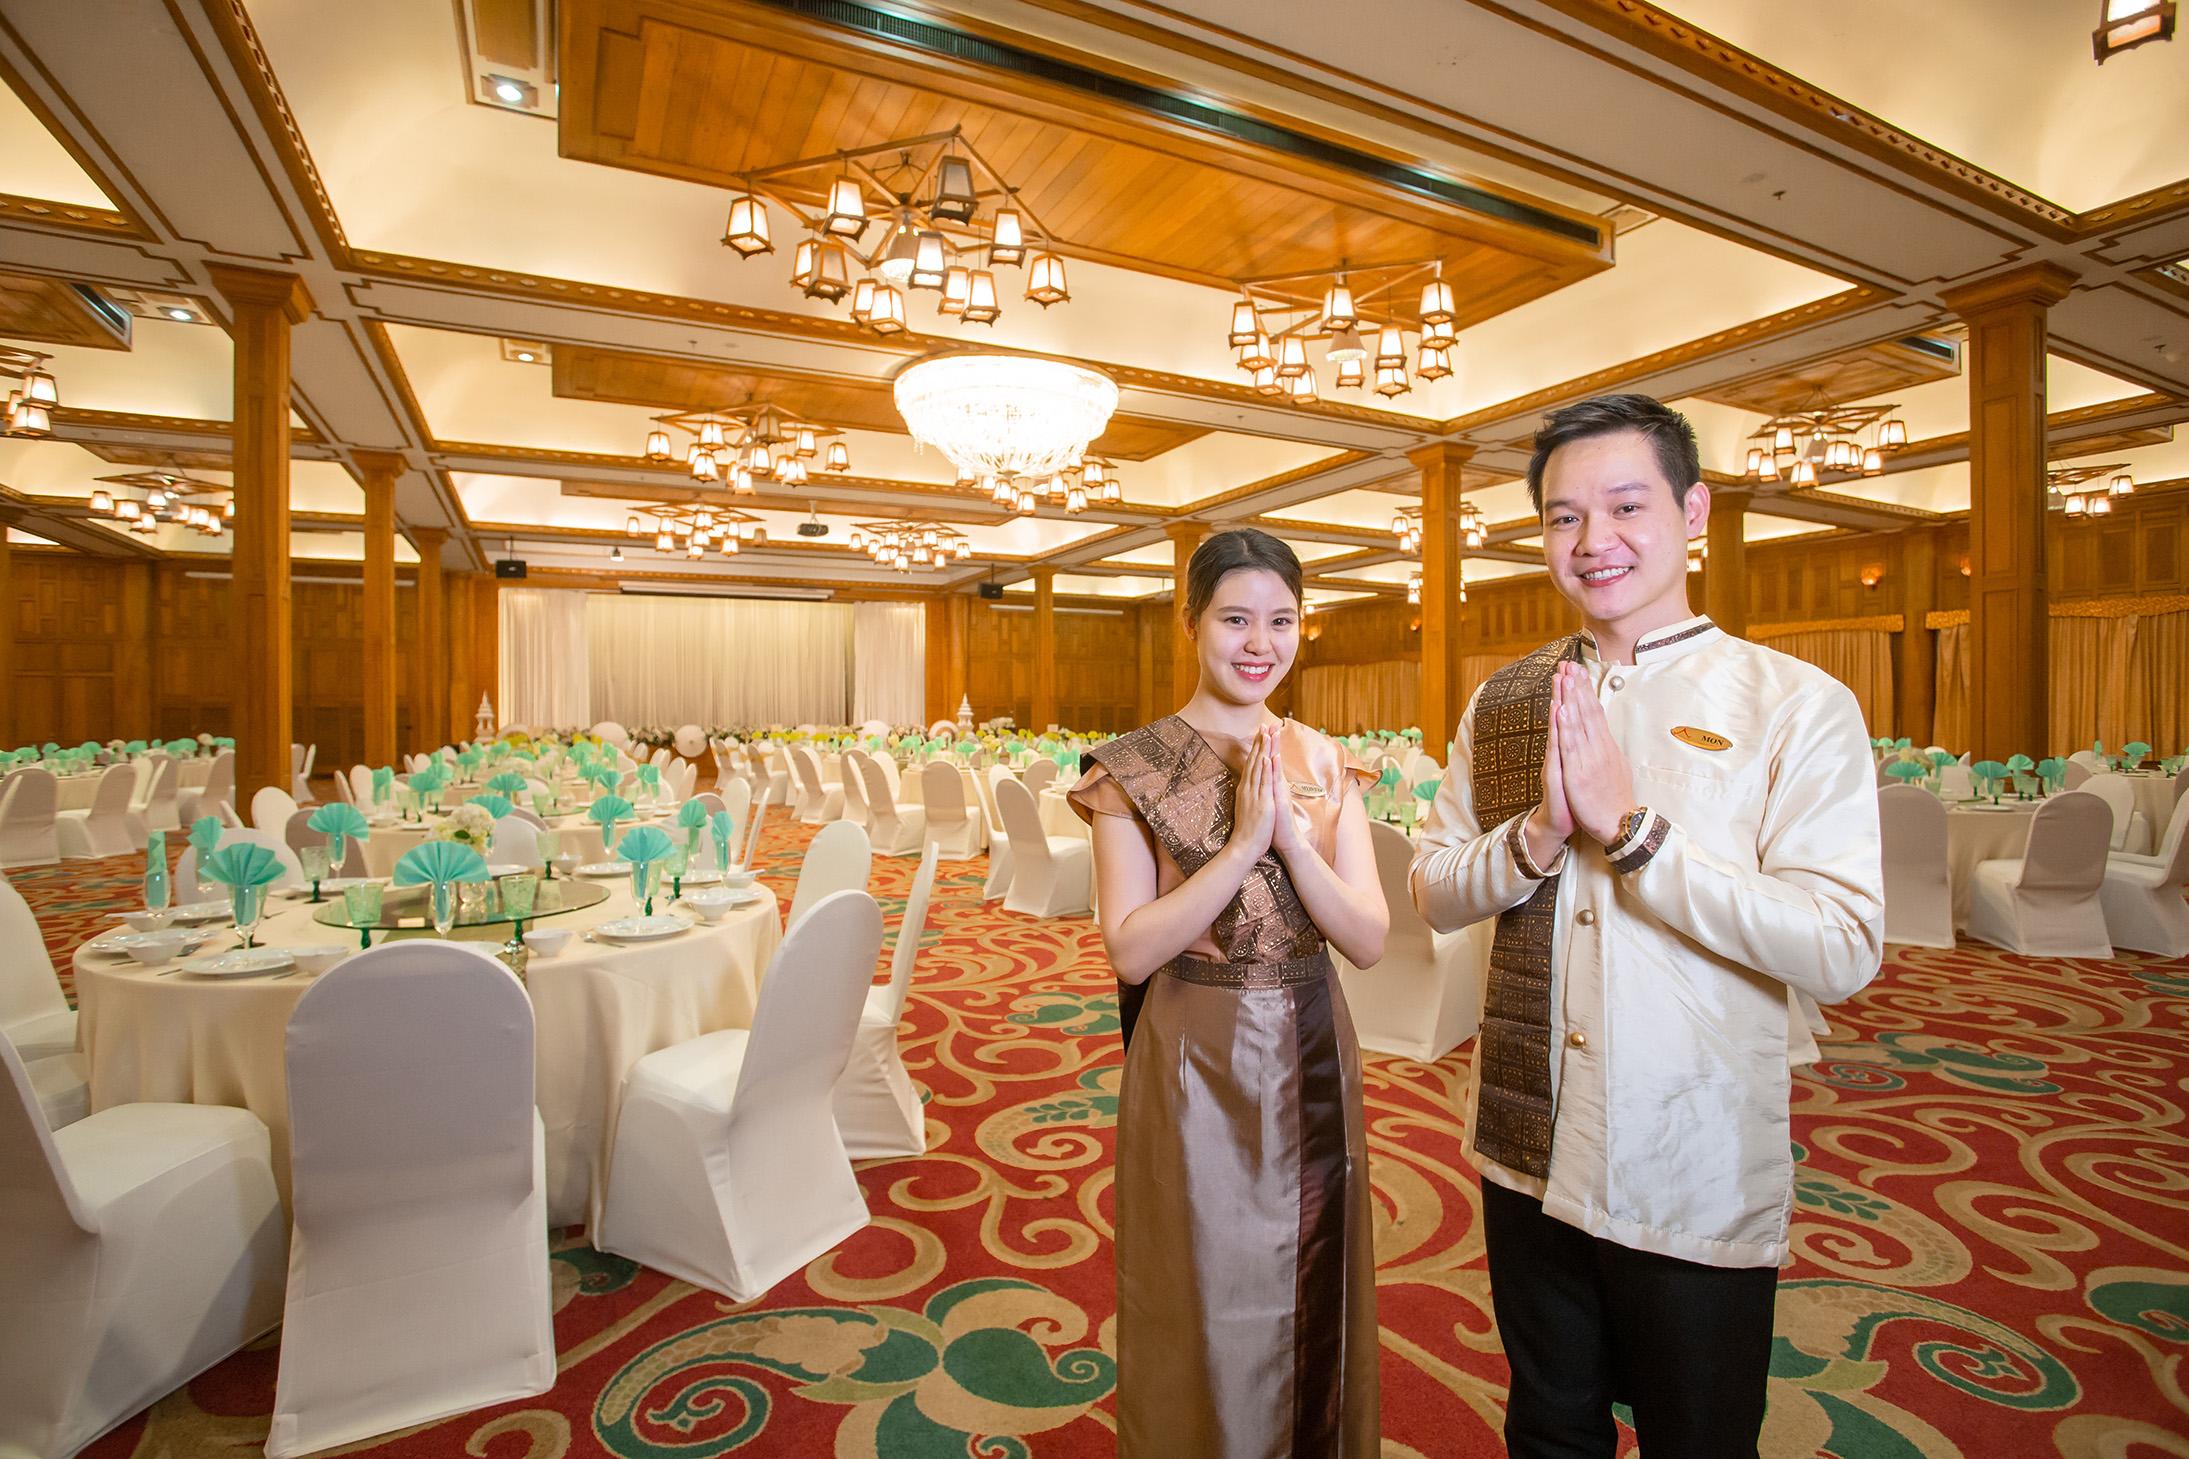 Khum Phucome Hotel -Sha Extra Plus Chiang Mai Esterno foto